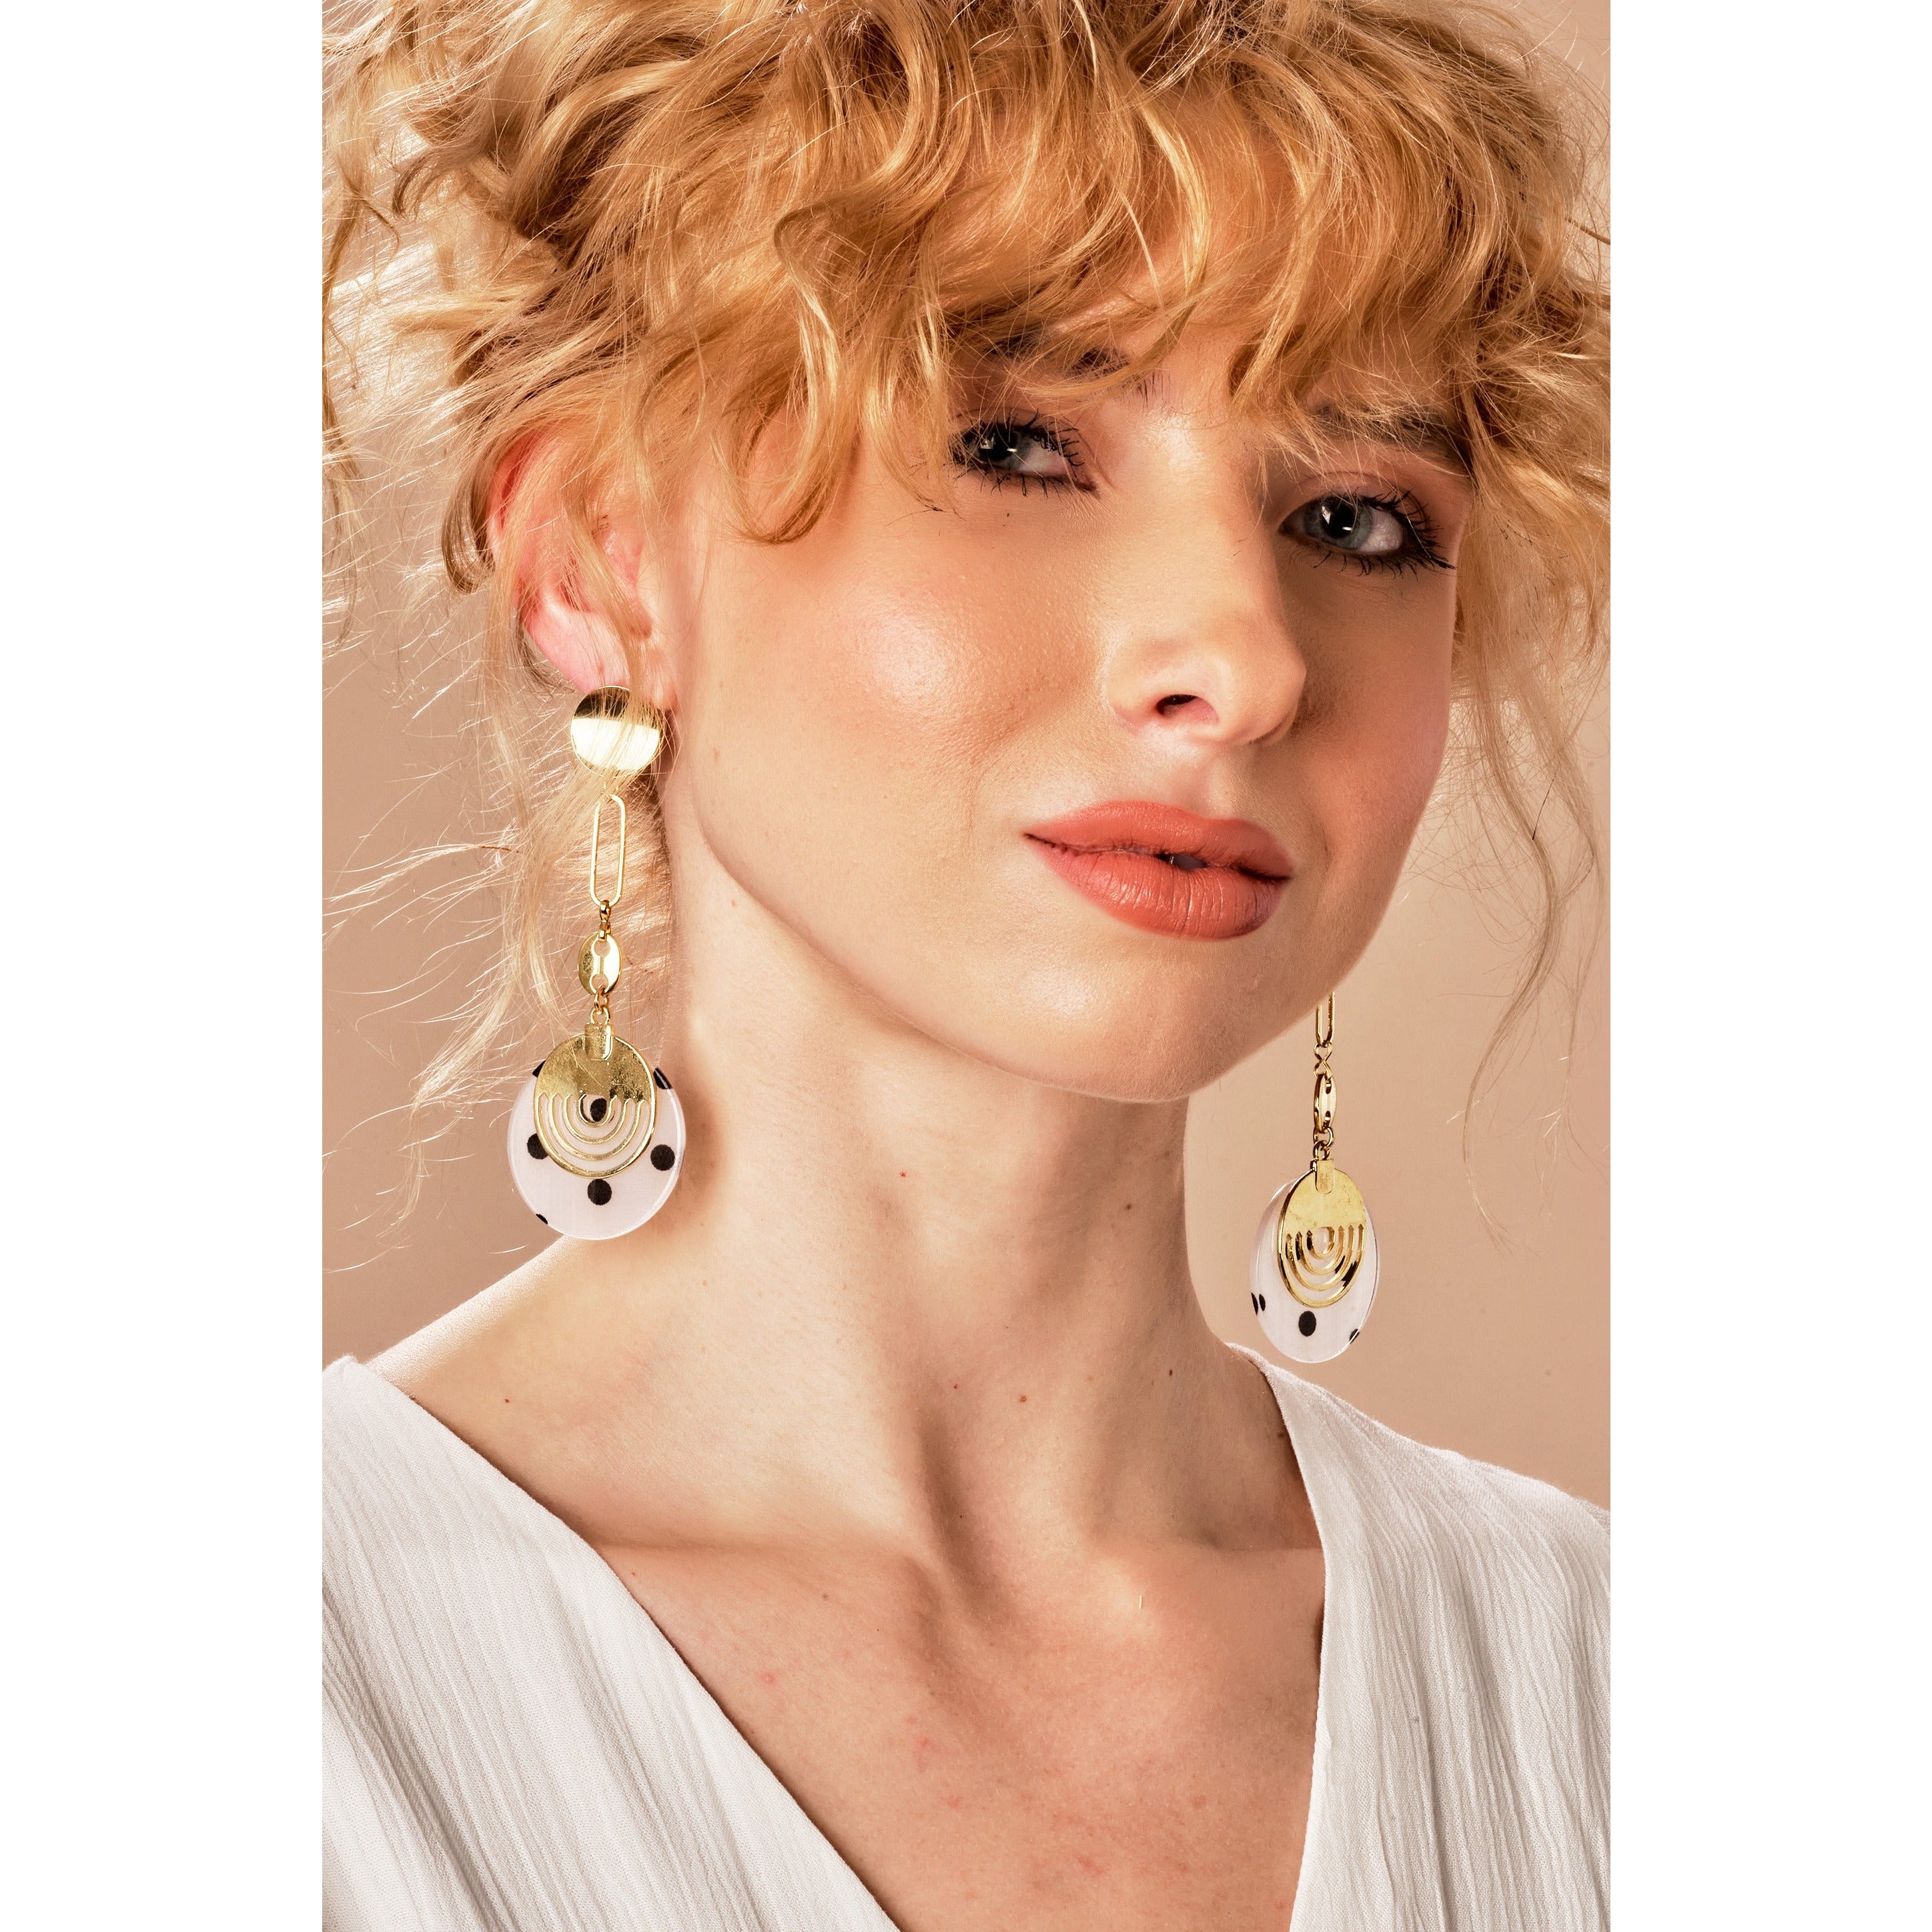 womens earrings